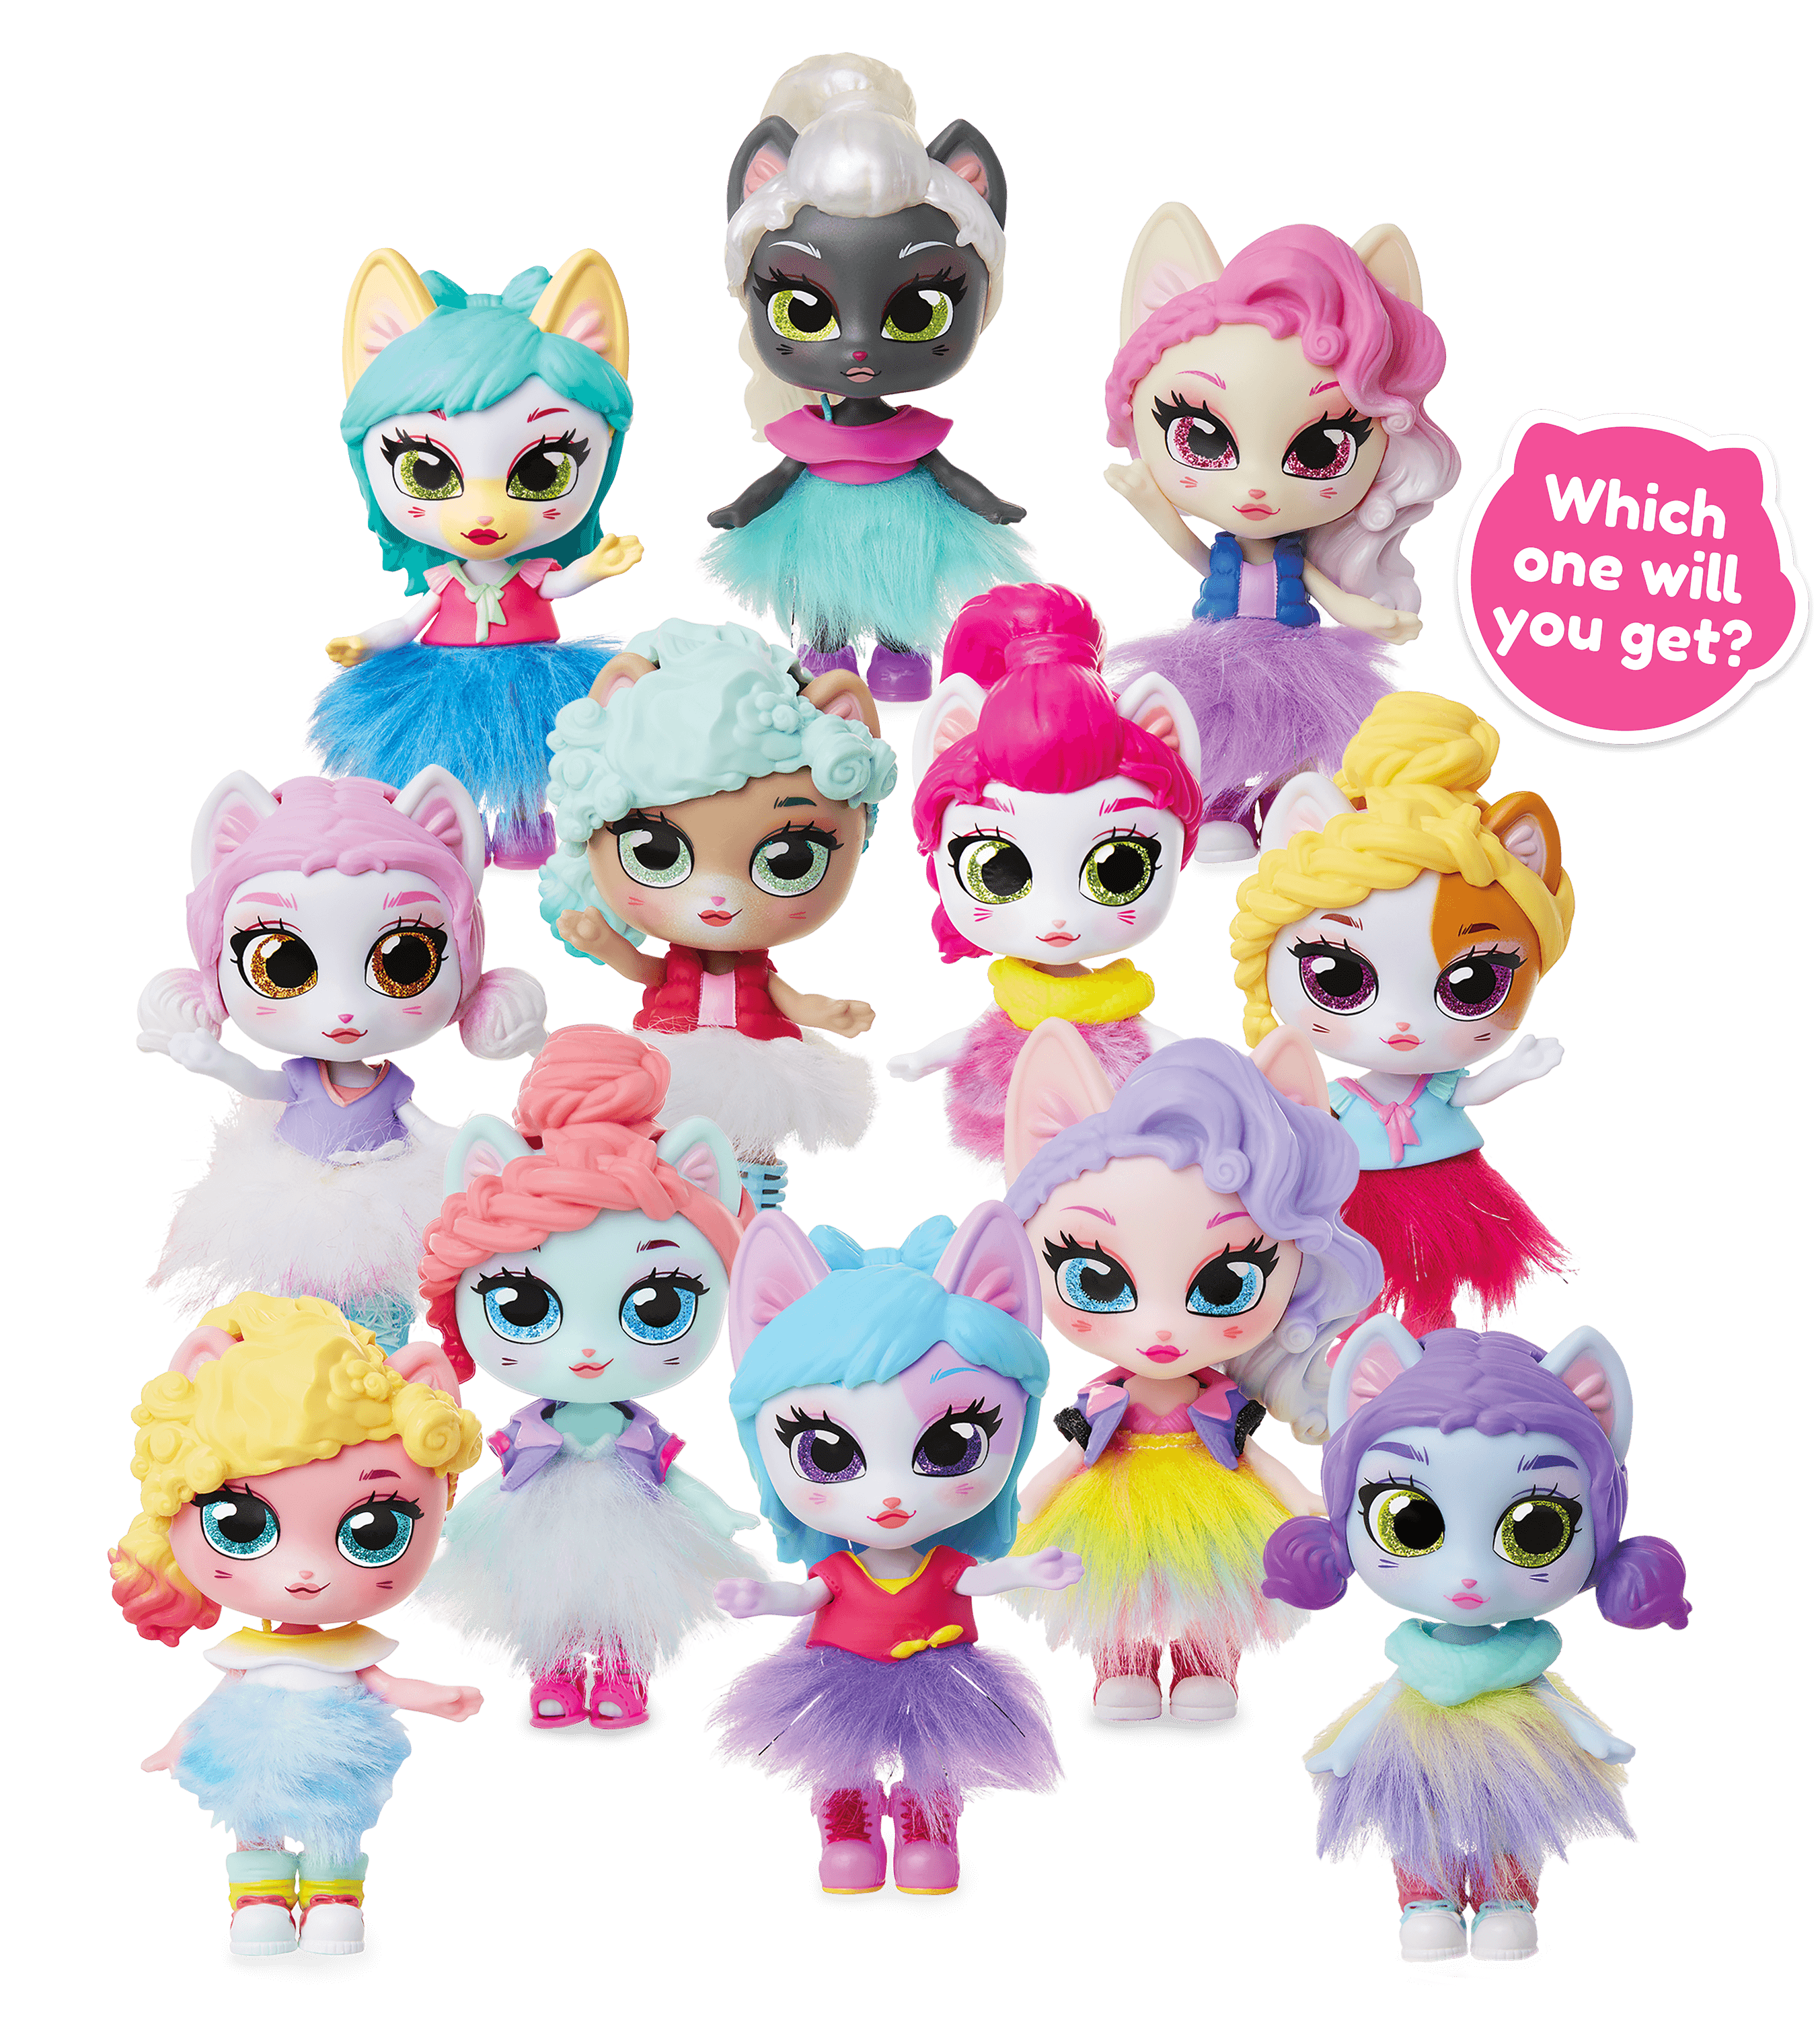 Kitten Kätzchen Catfé Purrista Girls Doll Figuren zum Sammeln 12 in MIX Serie2 